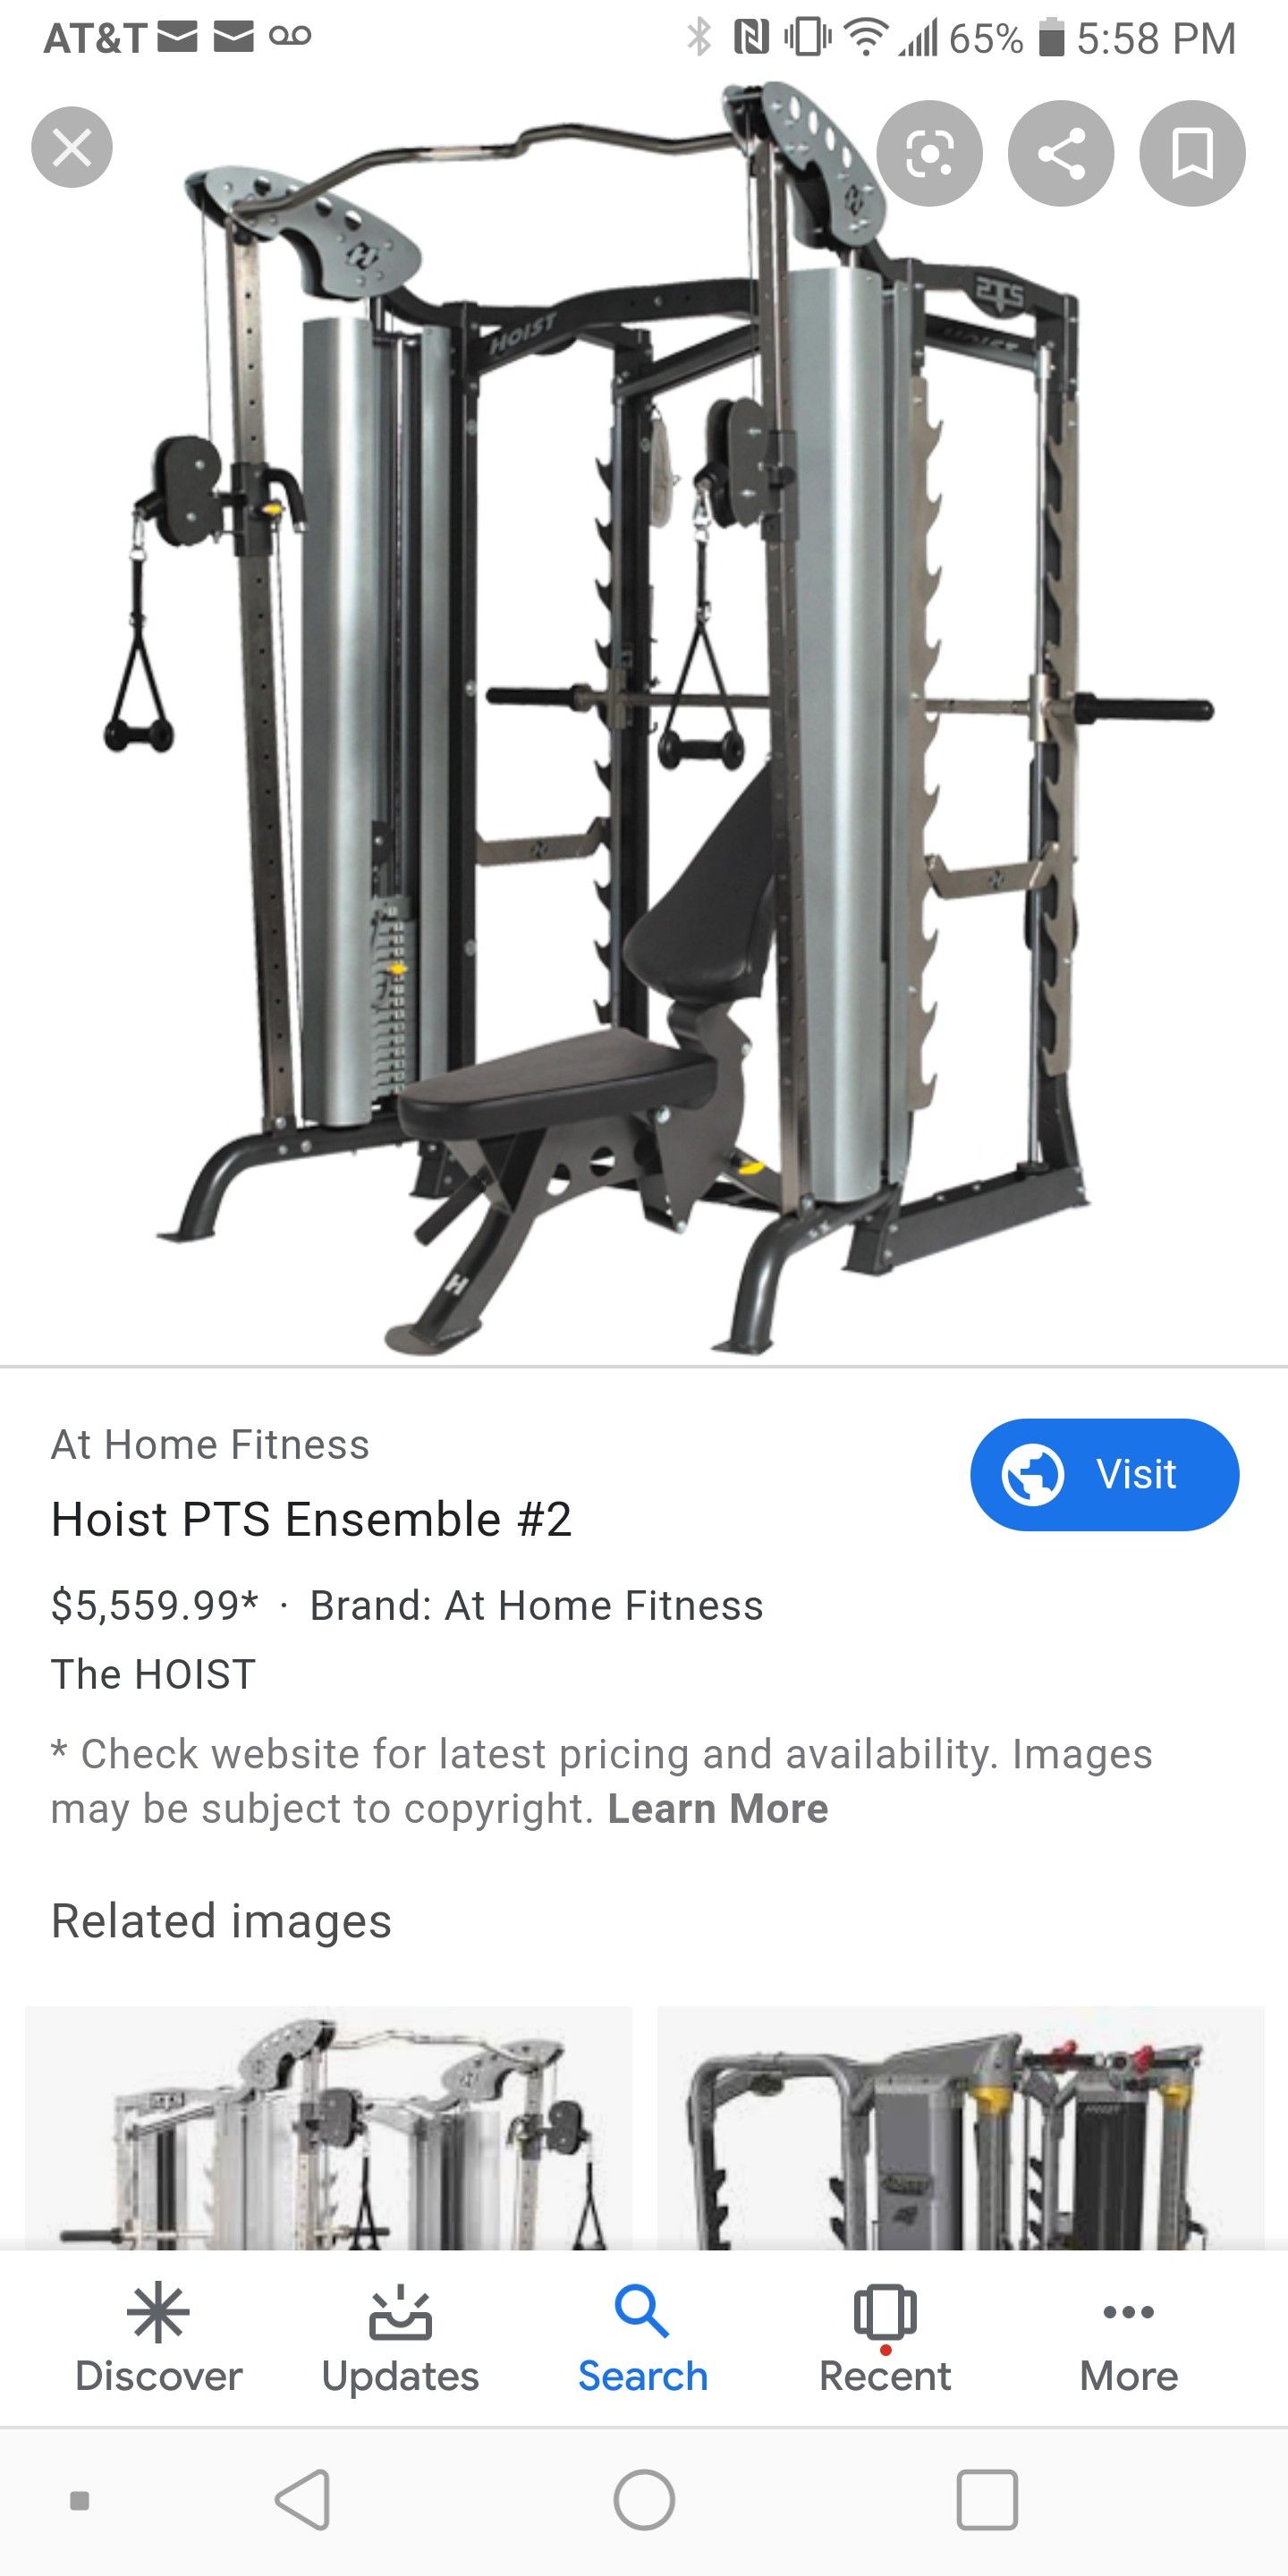 Hoist PTS home gym valued at over 5k